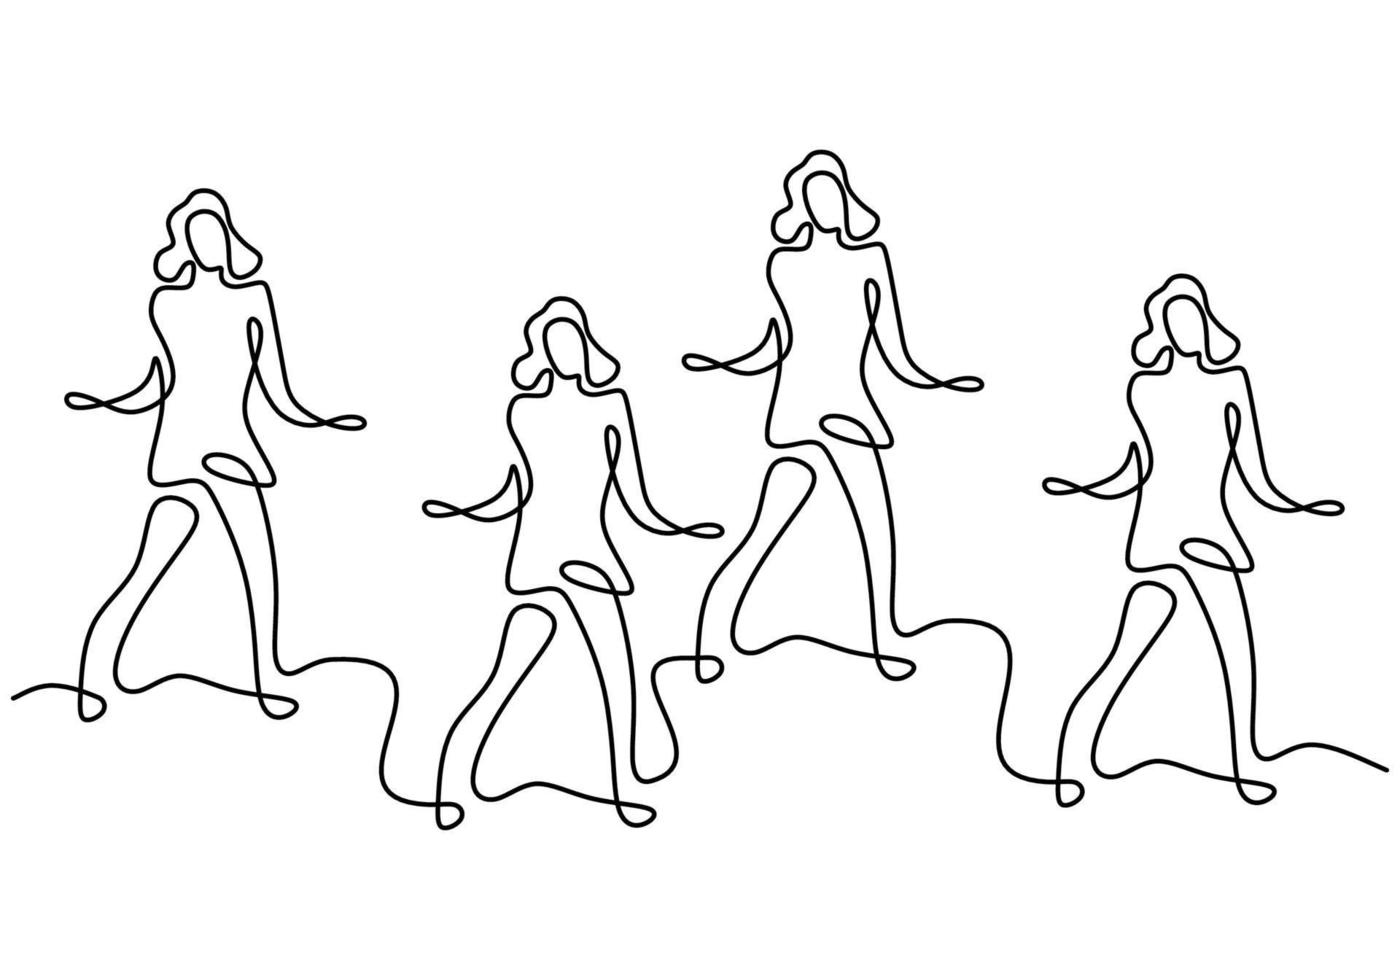 dibujo de línea continua de grupo de chicas en baile de zumba. Cuatro enérgicas mujeres jóvenes practican la danza aislada sobre fondo blanco. danza deporte y concepto de estilo de vida saludable. ilustración vectorial vector